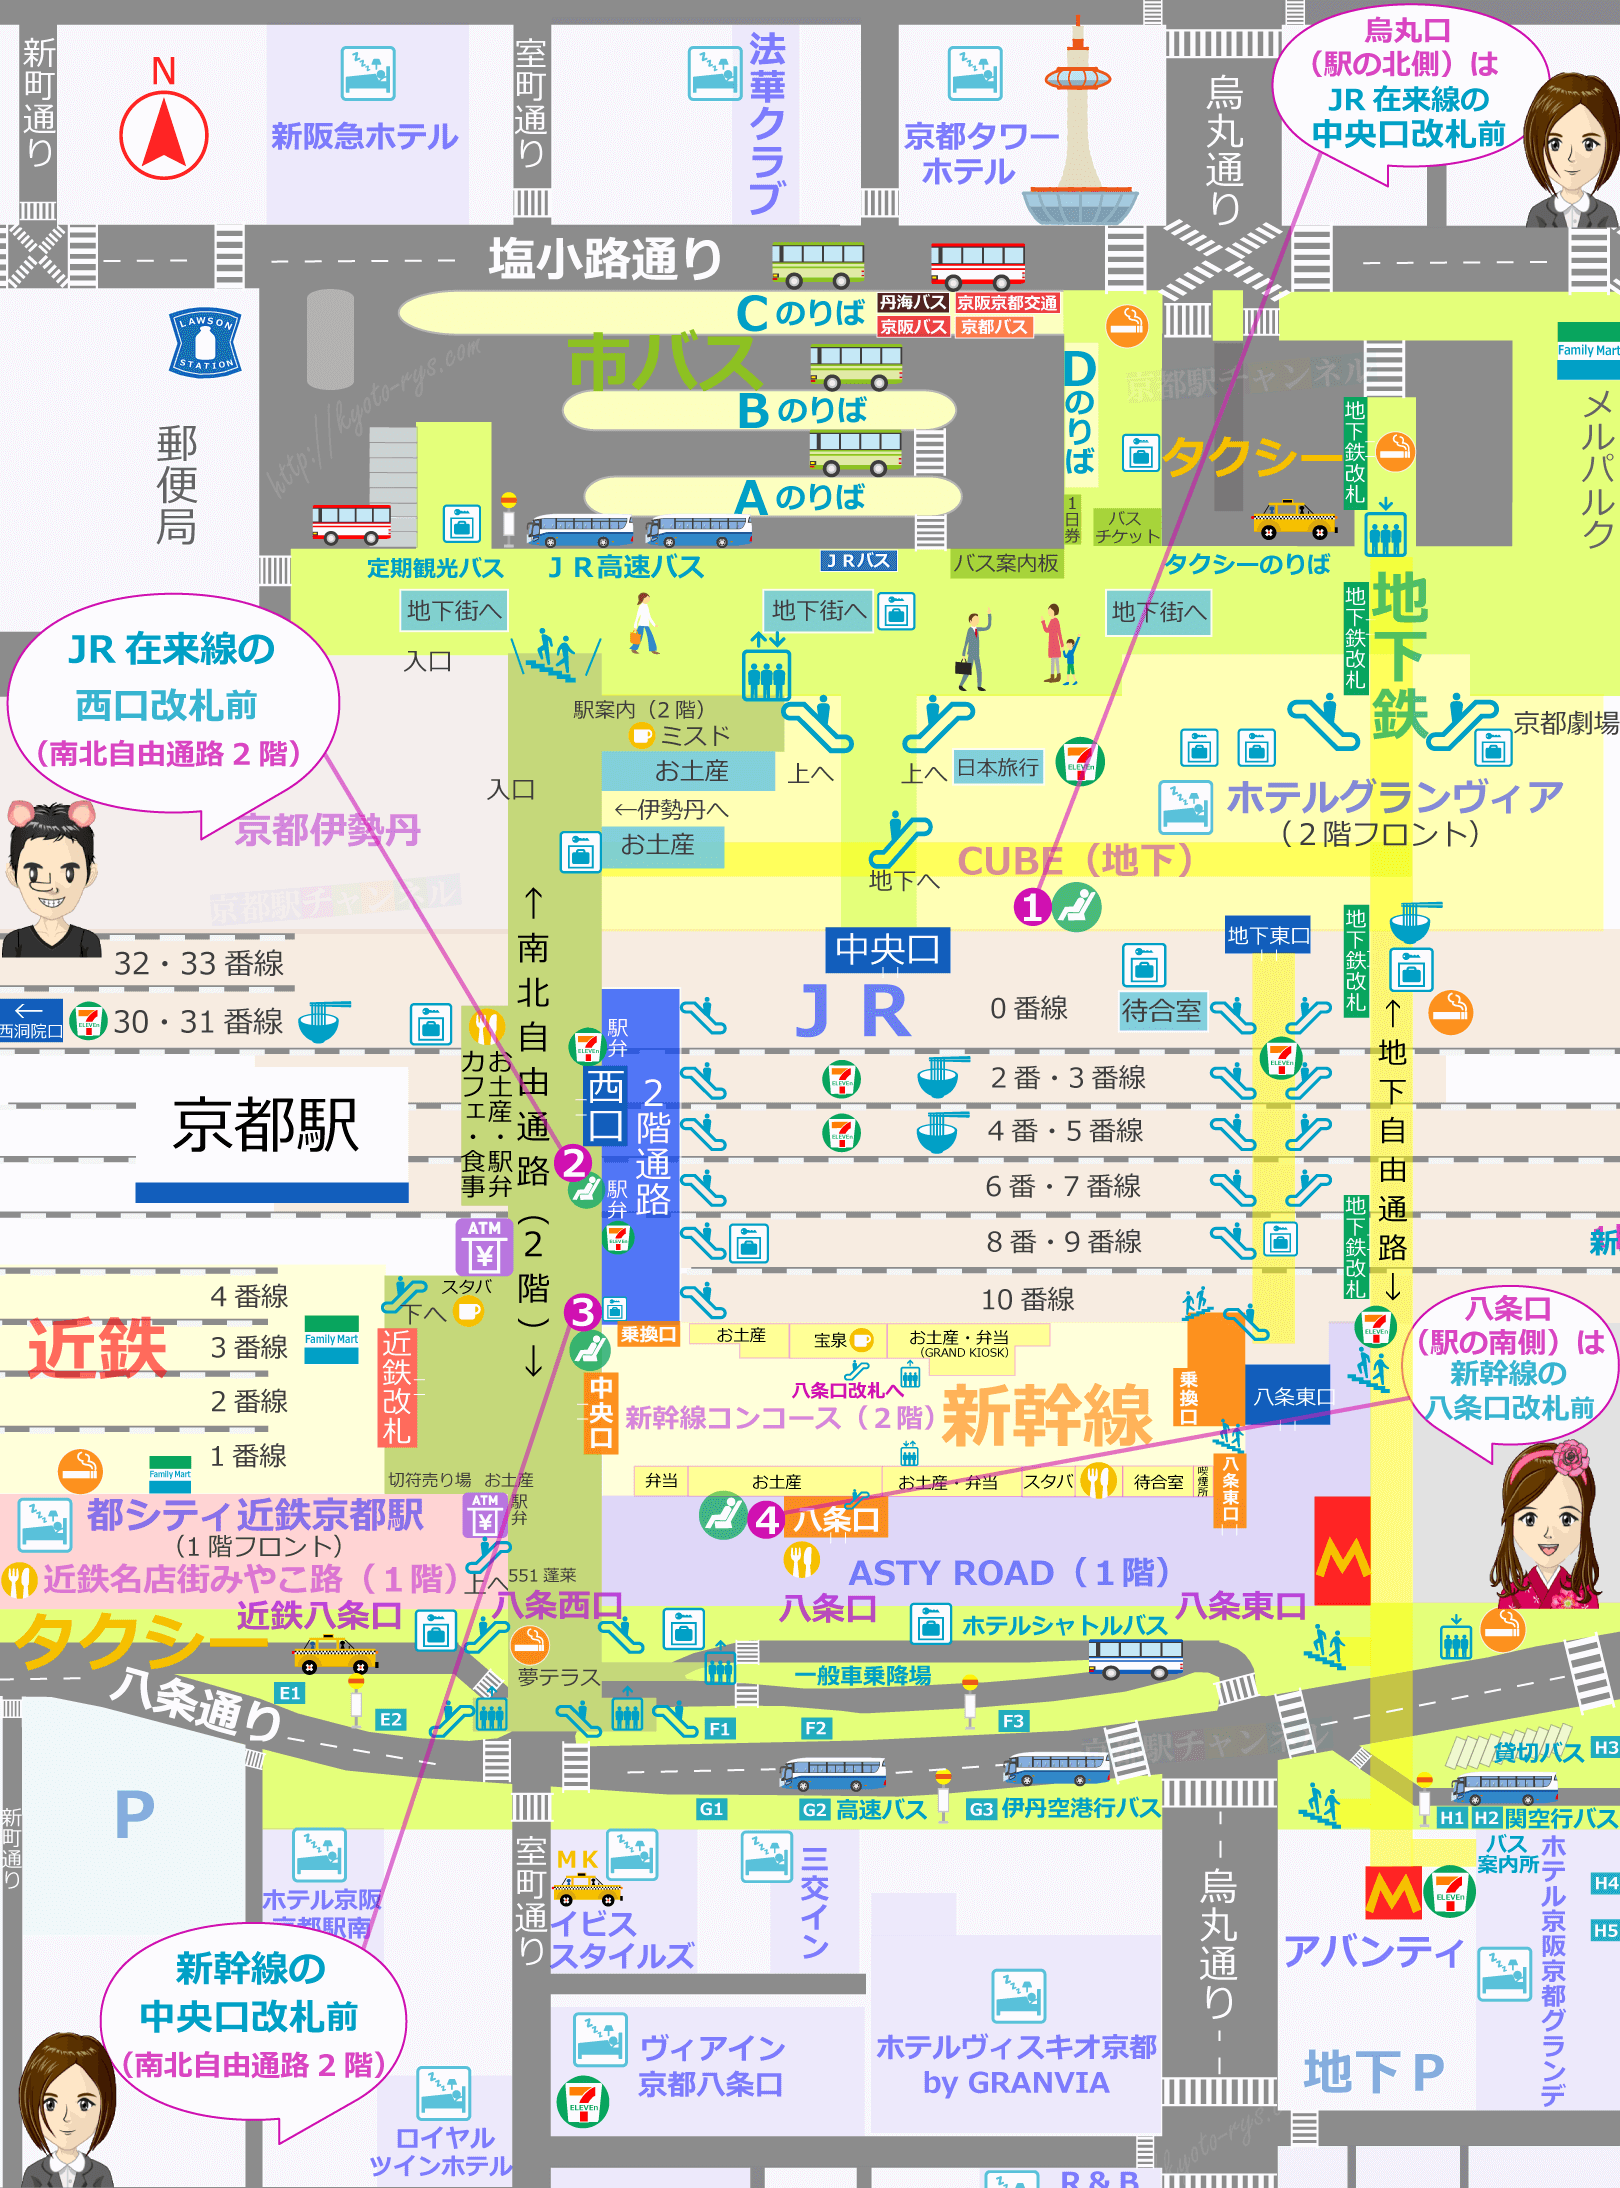 京都駅全体のみどりの窓口や切符売場の地図